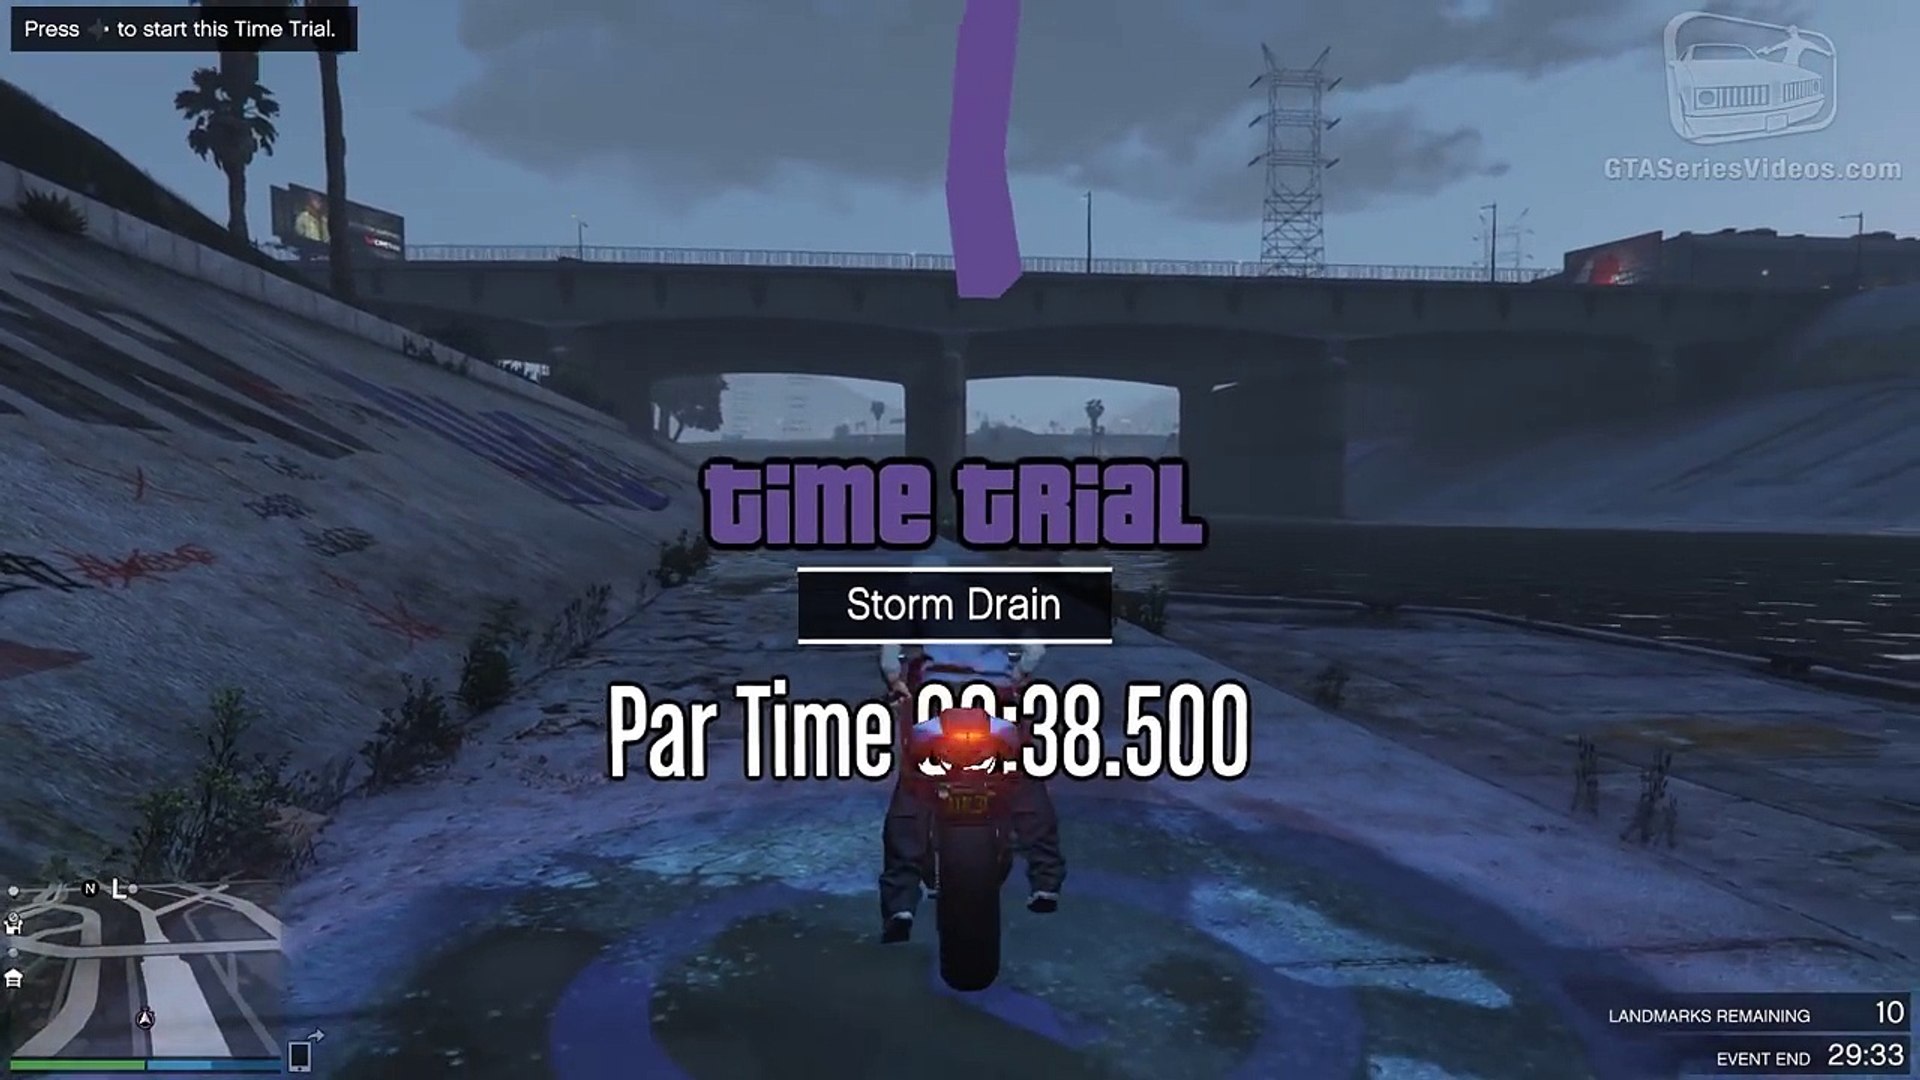 GTA Online Time Trial - Storm Drain (Under Par Time) - video ...